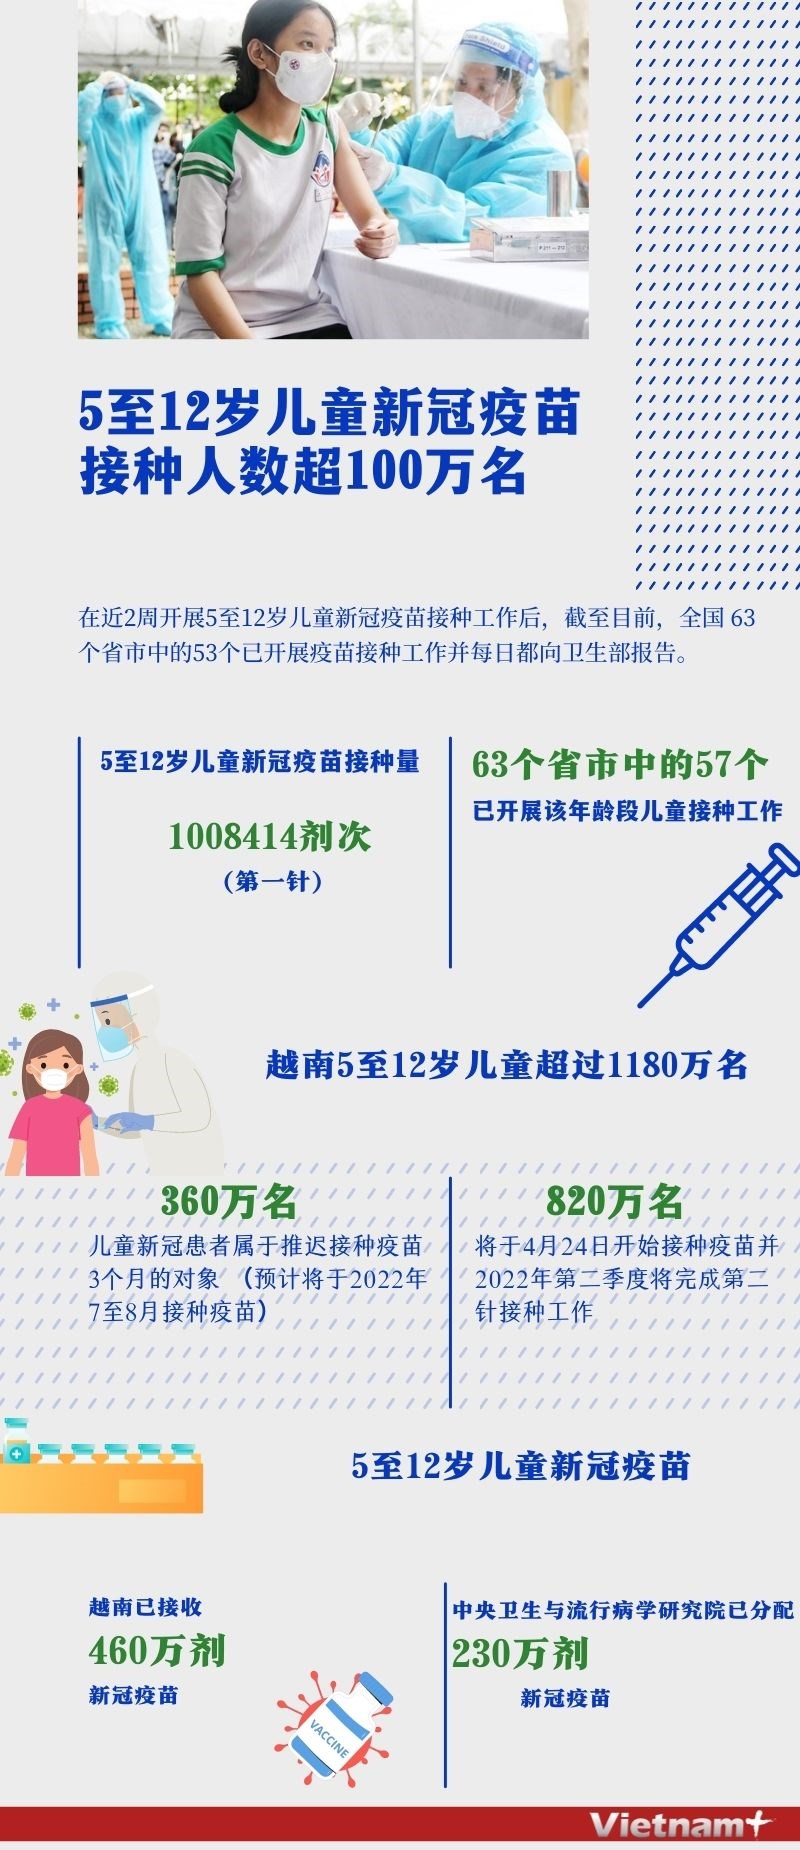 图表新闻：5至12岁儿童新冠疫苗接种人数超100万名 hinh anh 1